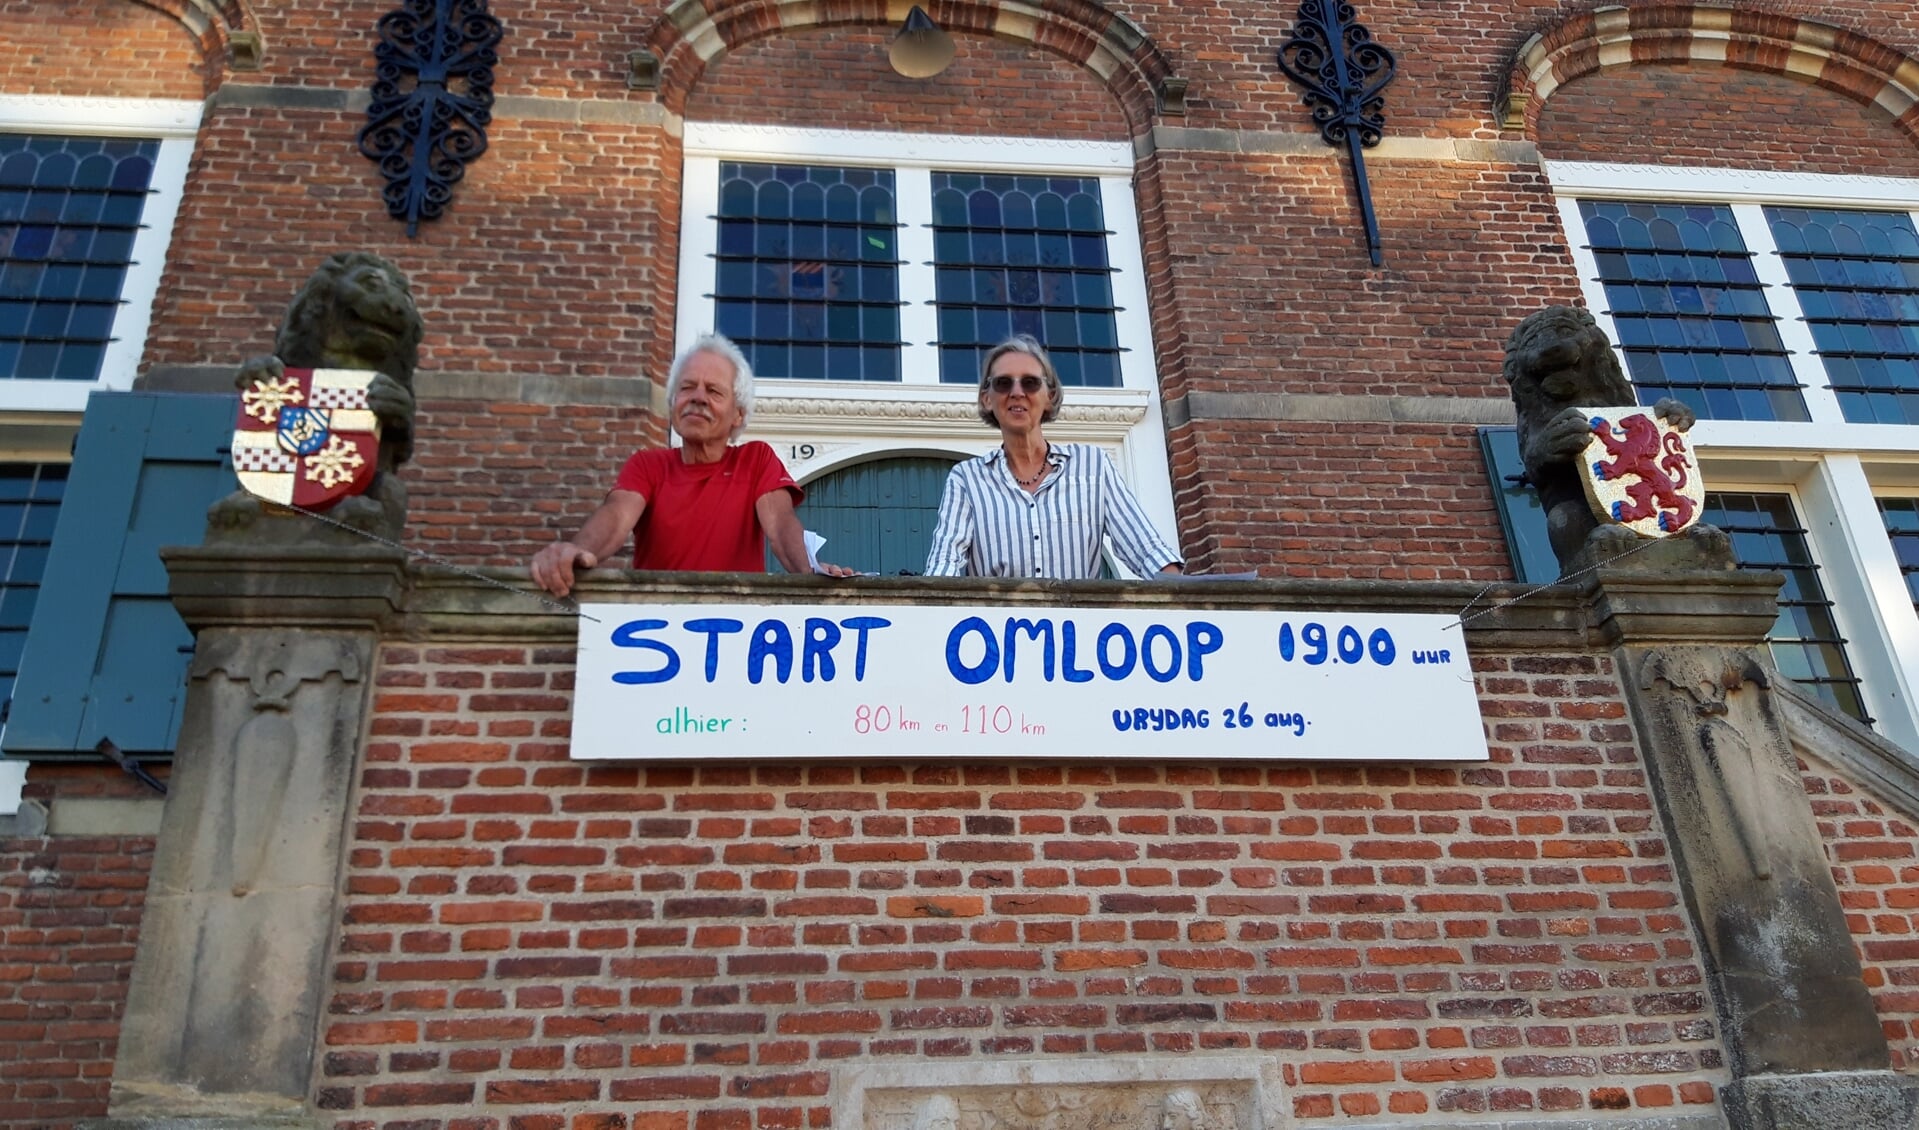 Ton Korteweg en Thea de Vos op het bordes van het oude raadhuis van Ooltgensplaat vlak voor de start van de 33ste Omloop.